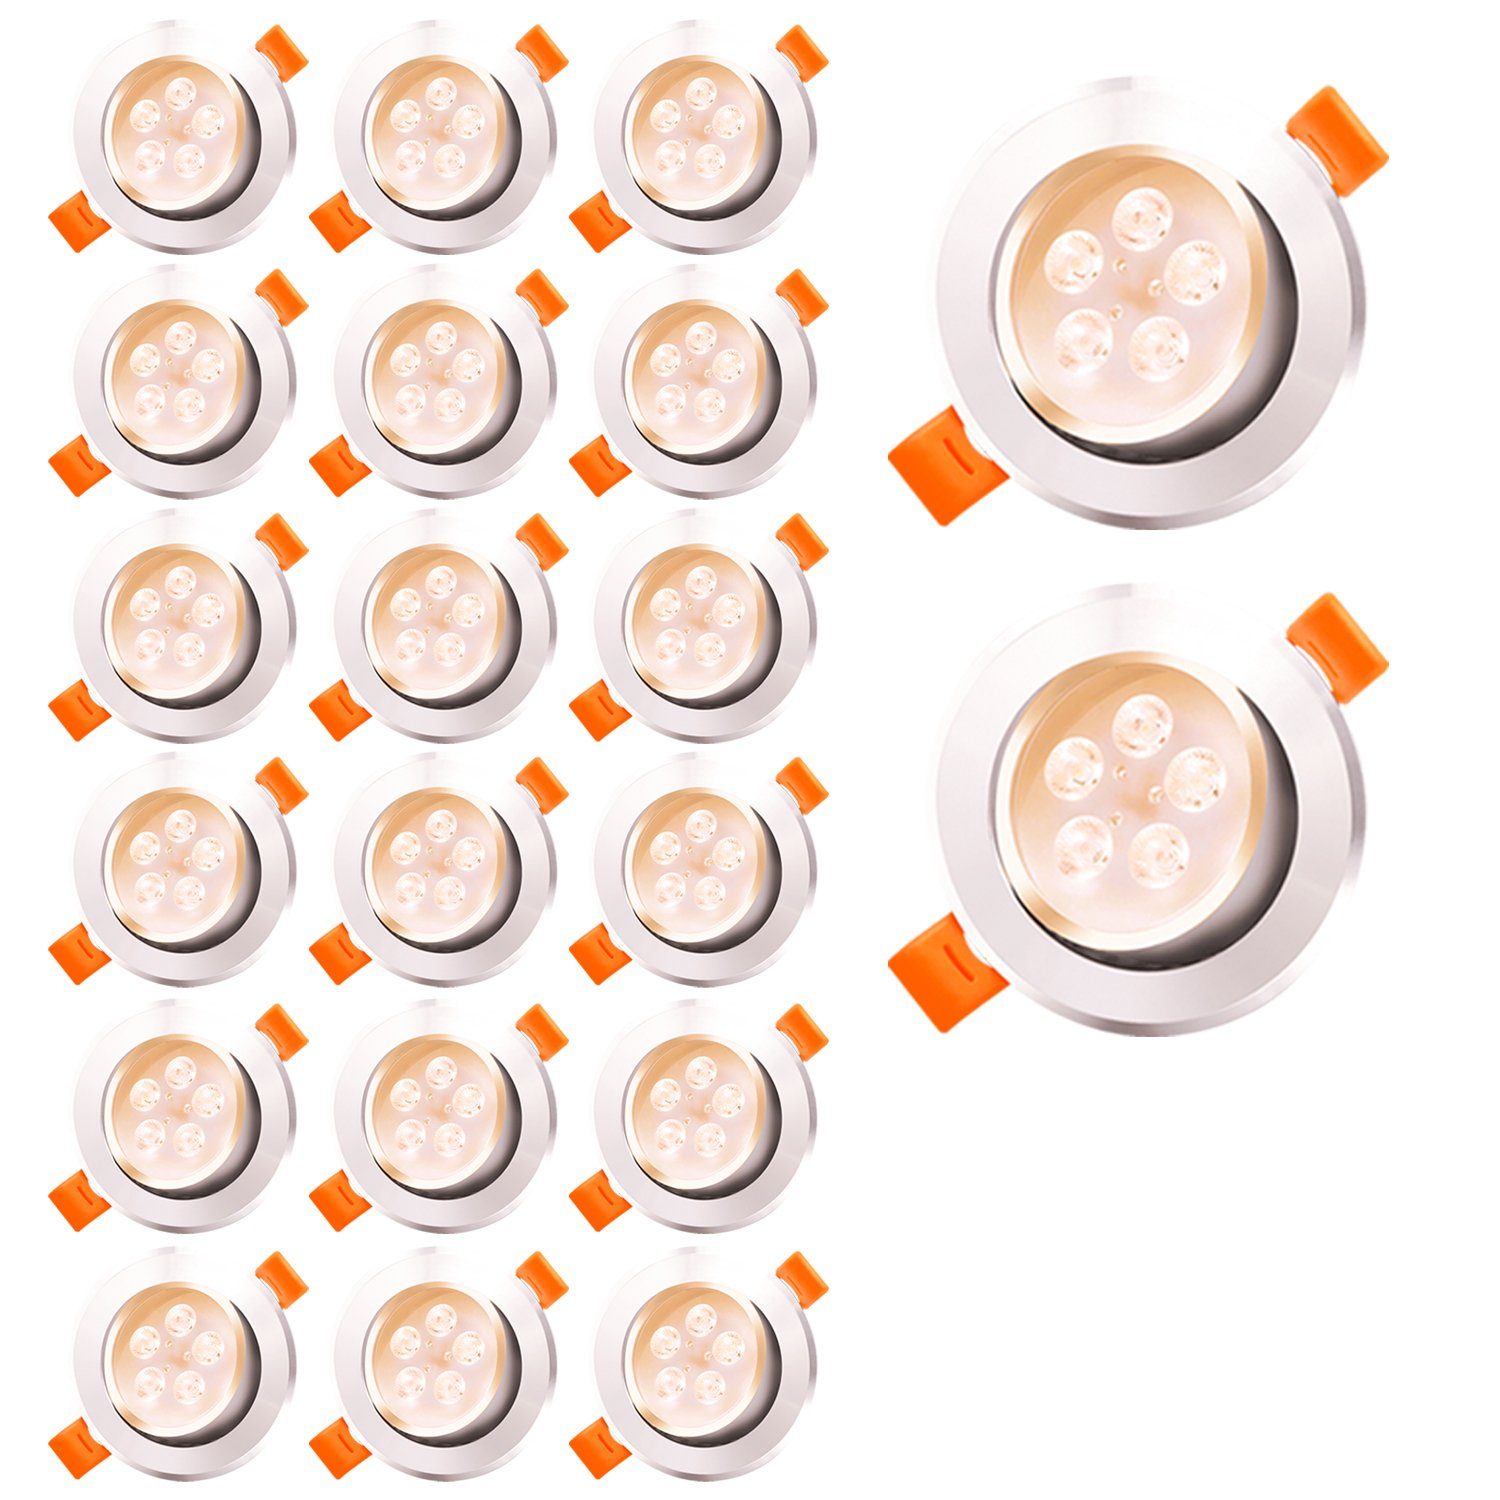 Platinen 5W Einbaustrahler Einbau-Spots Spot LED Warmweiß 10-20er LED Led Einbaustrahler LED TolleTour 3W-7W